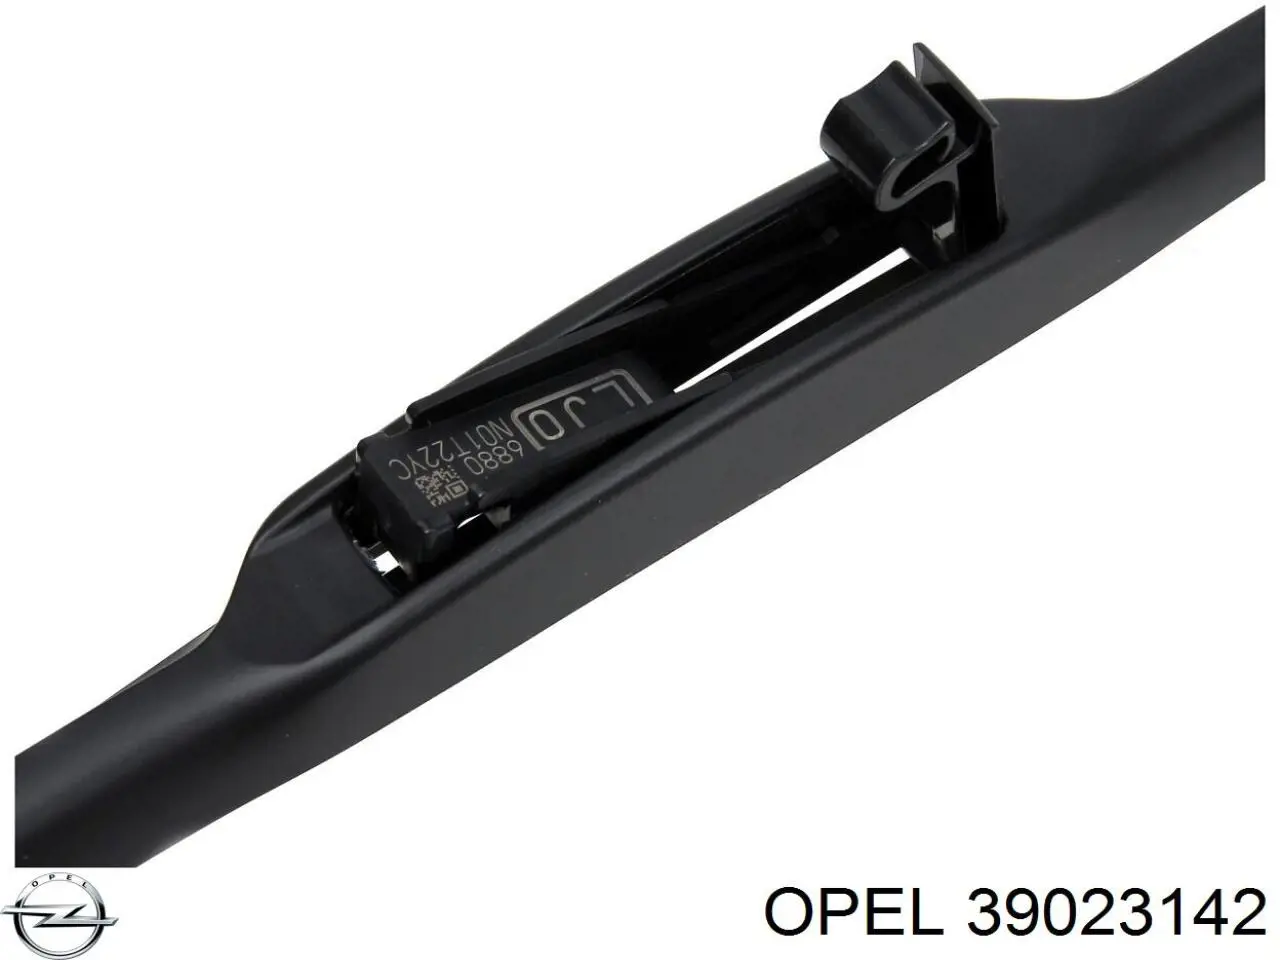 39023142 Opel щітка-двірник лобового скла, комплект з 2-х шт.